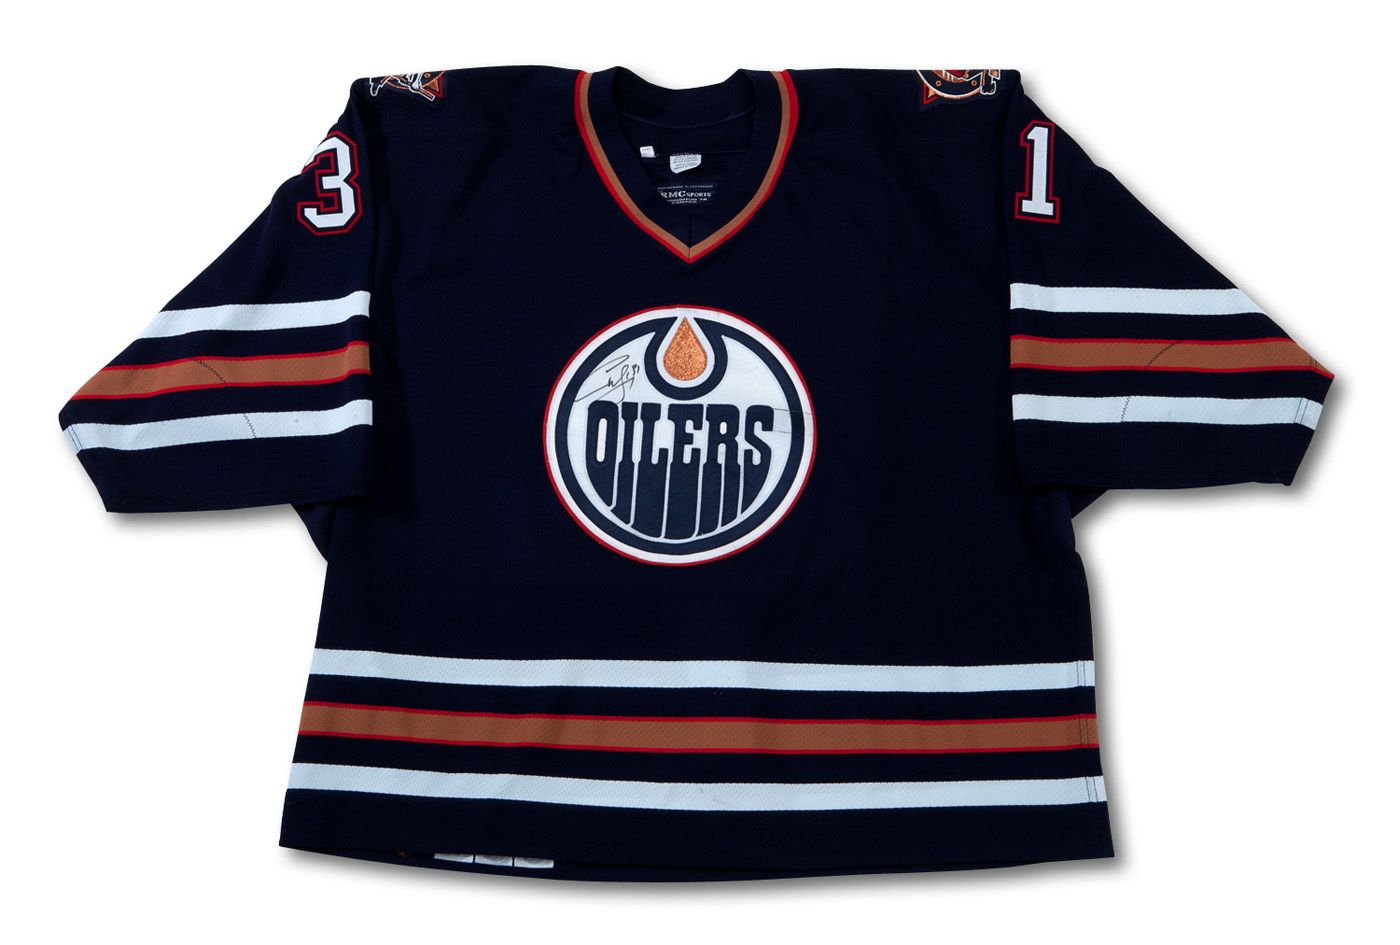 Edmonton Oilers Curtis Joseph autographed jersey. - Imgur